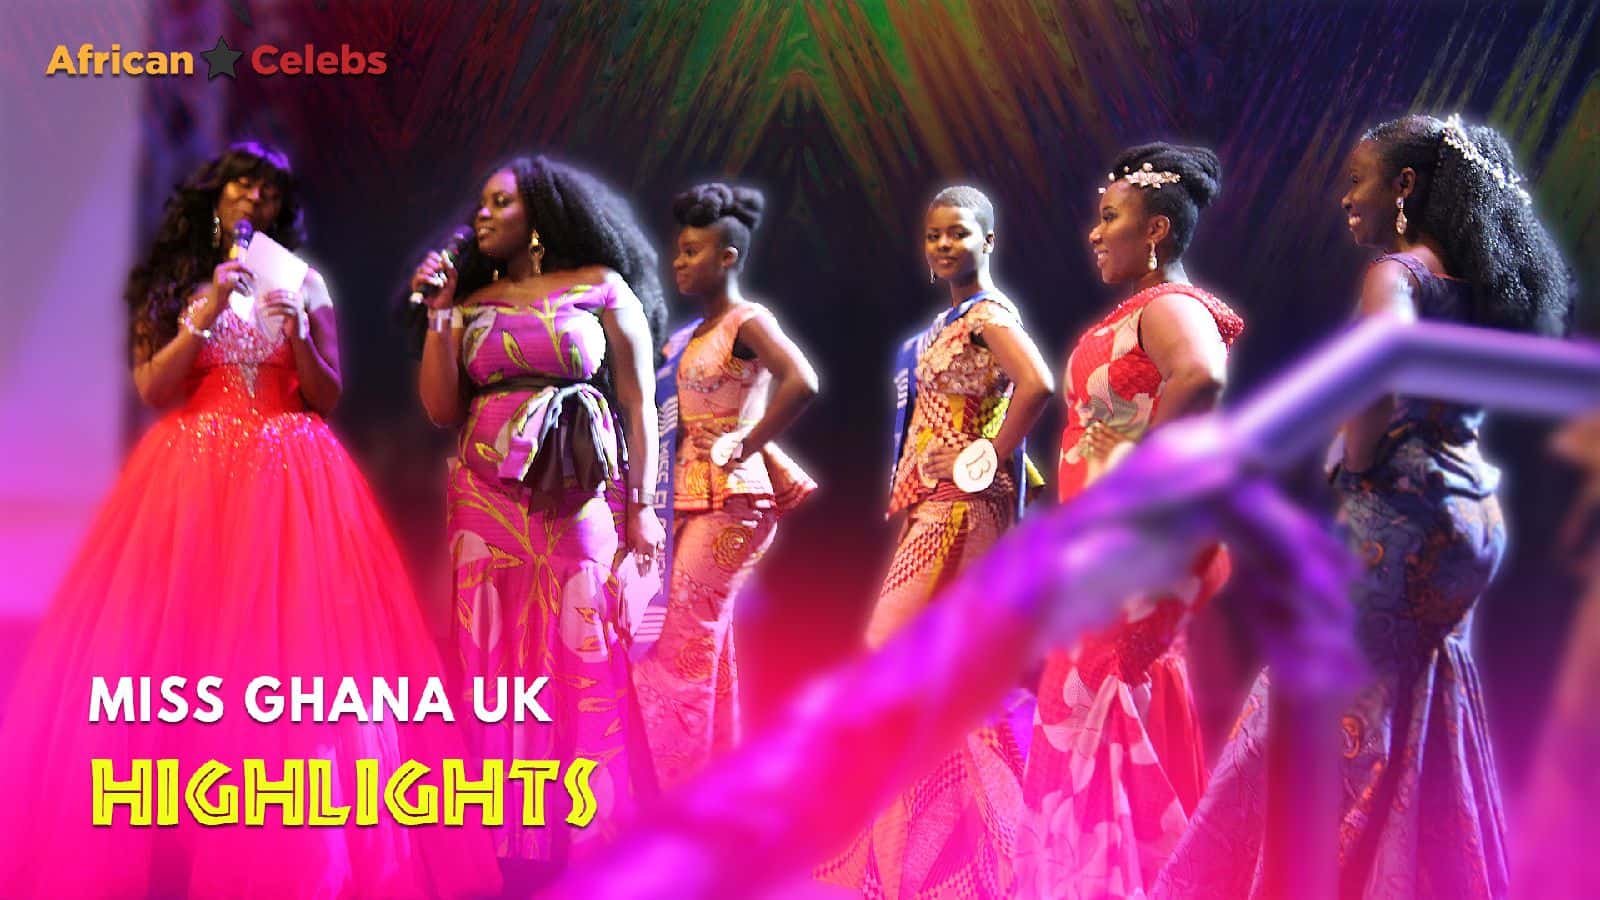 African Celebs Miss Ghana UK Highlights